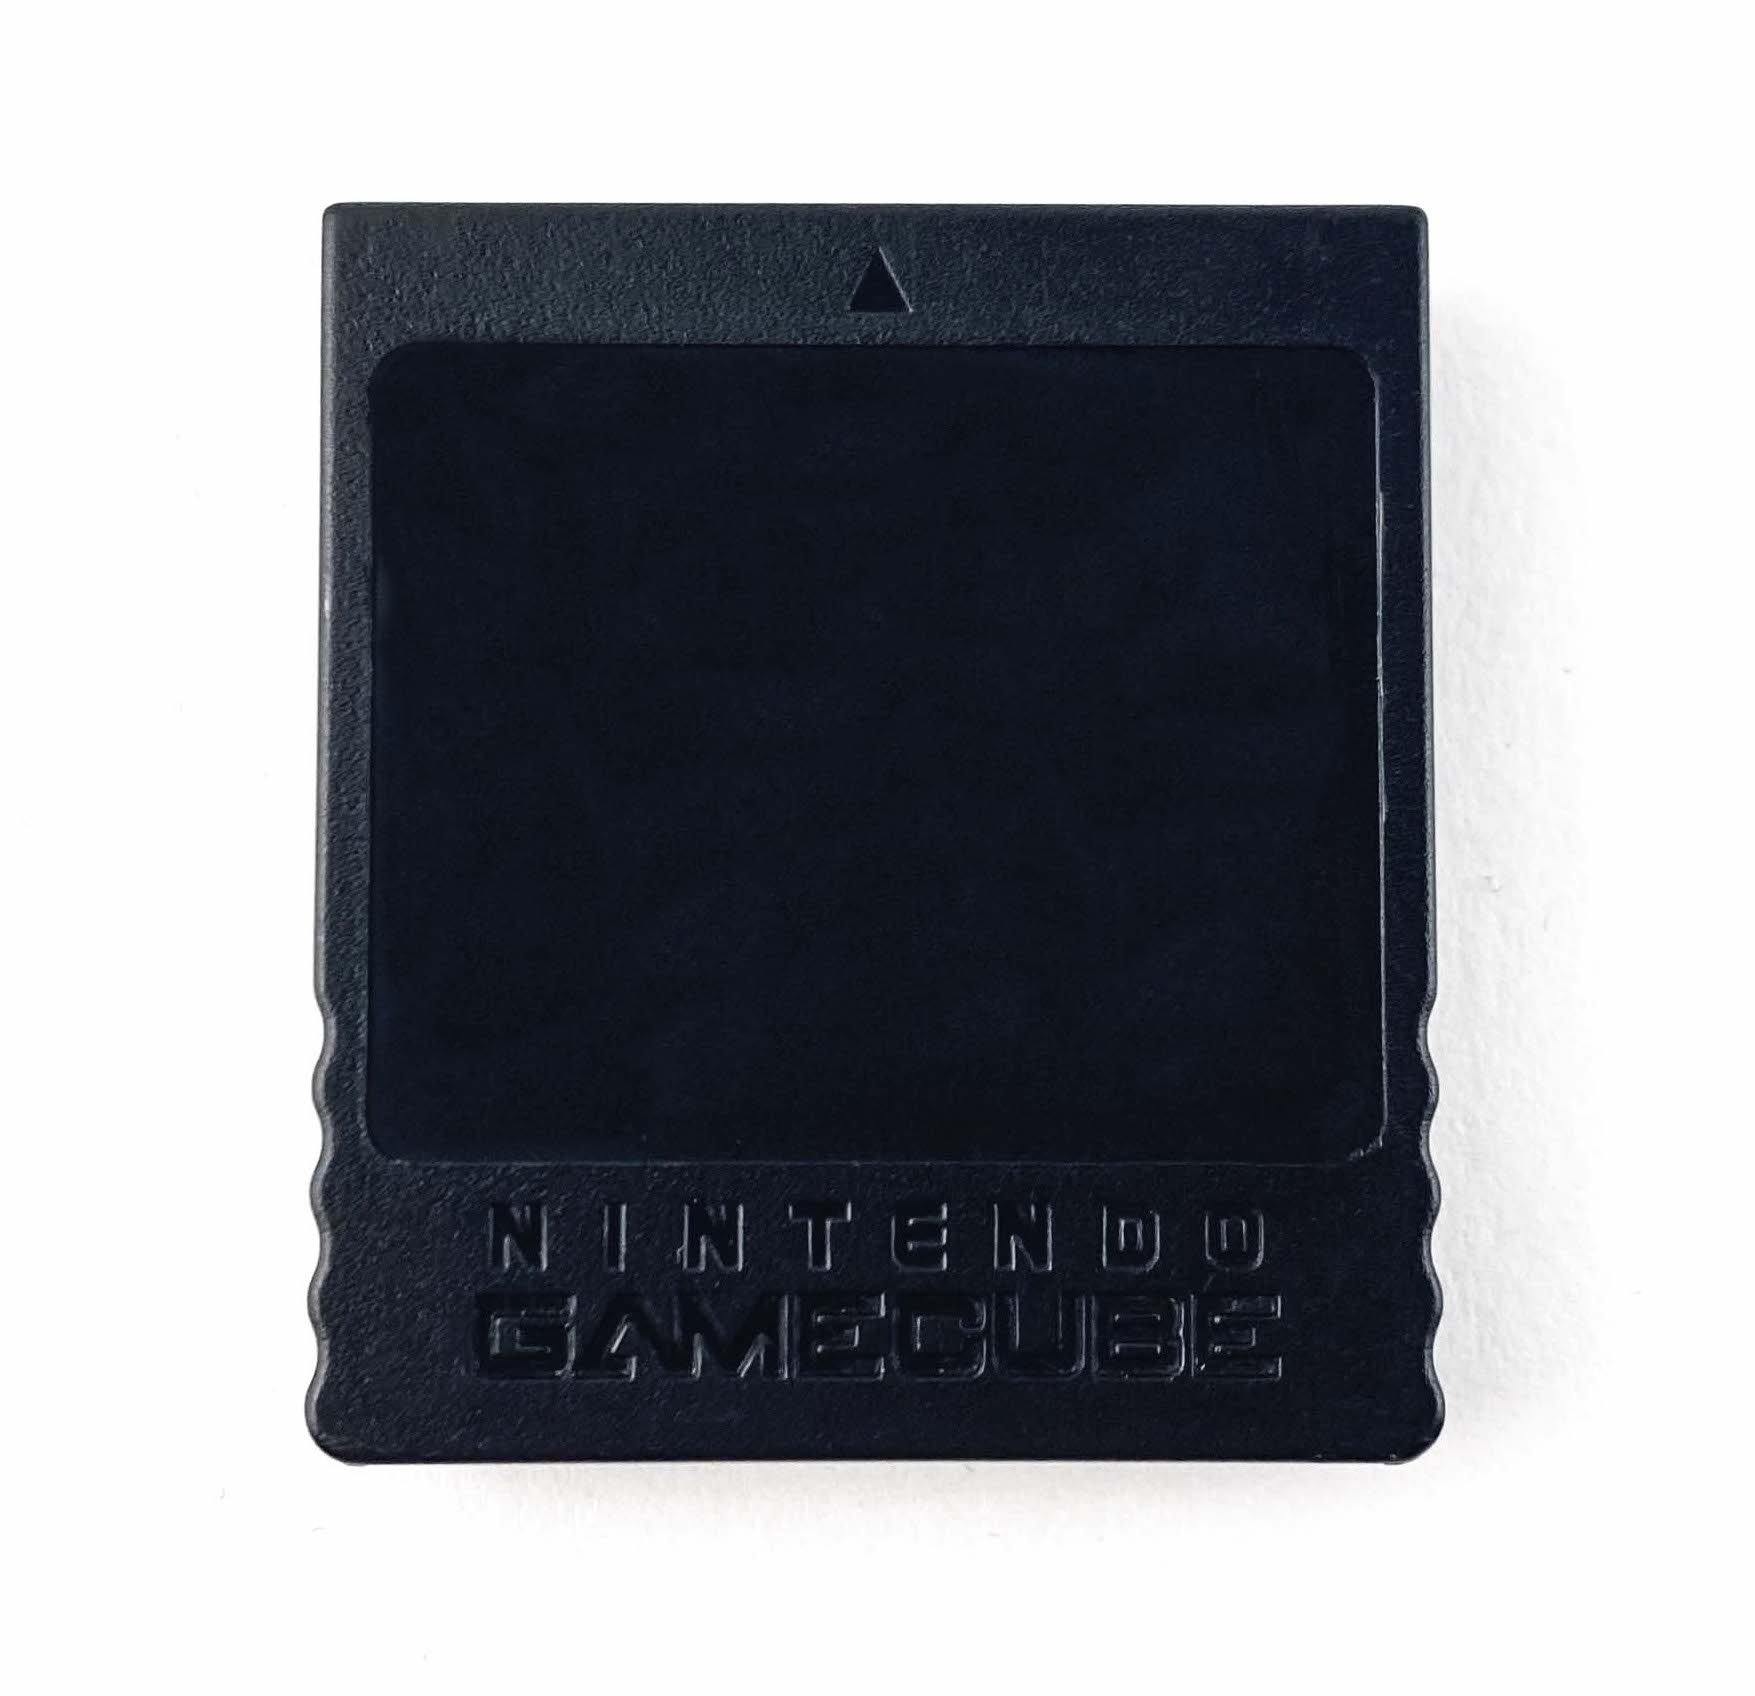 Nintendo Gamecube Memory Card 251 (DOL-014)